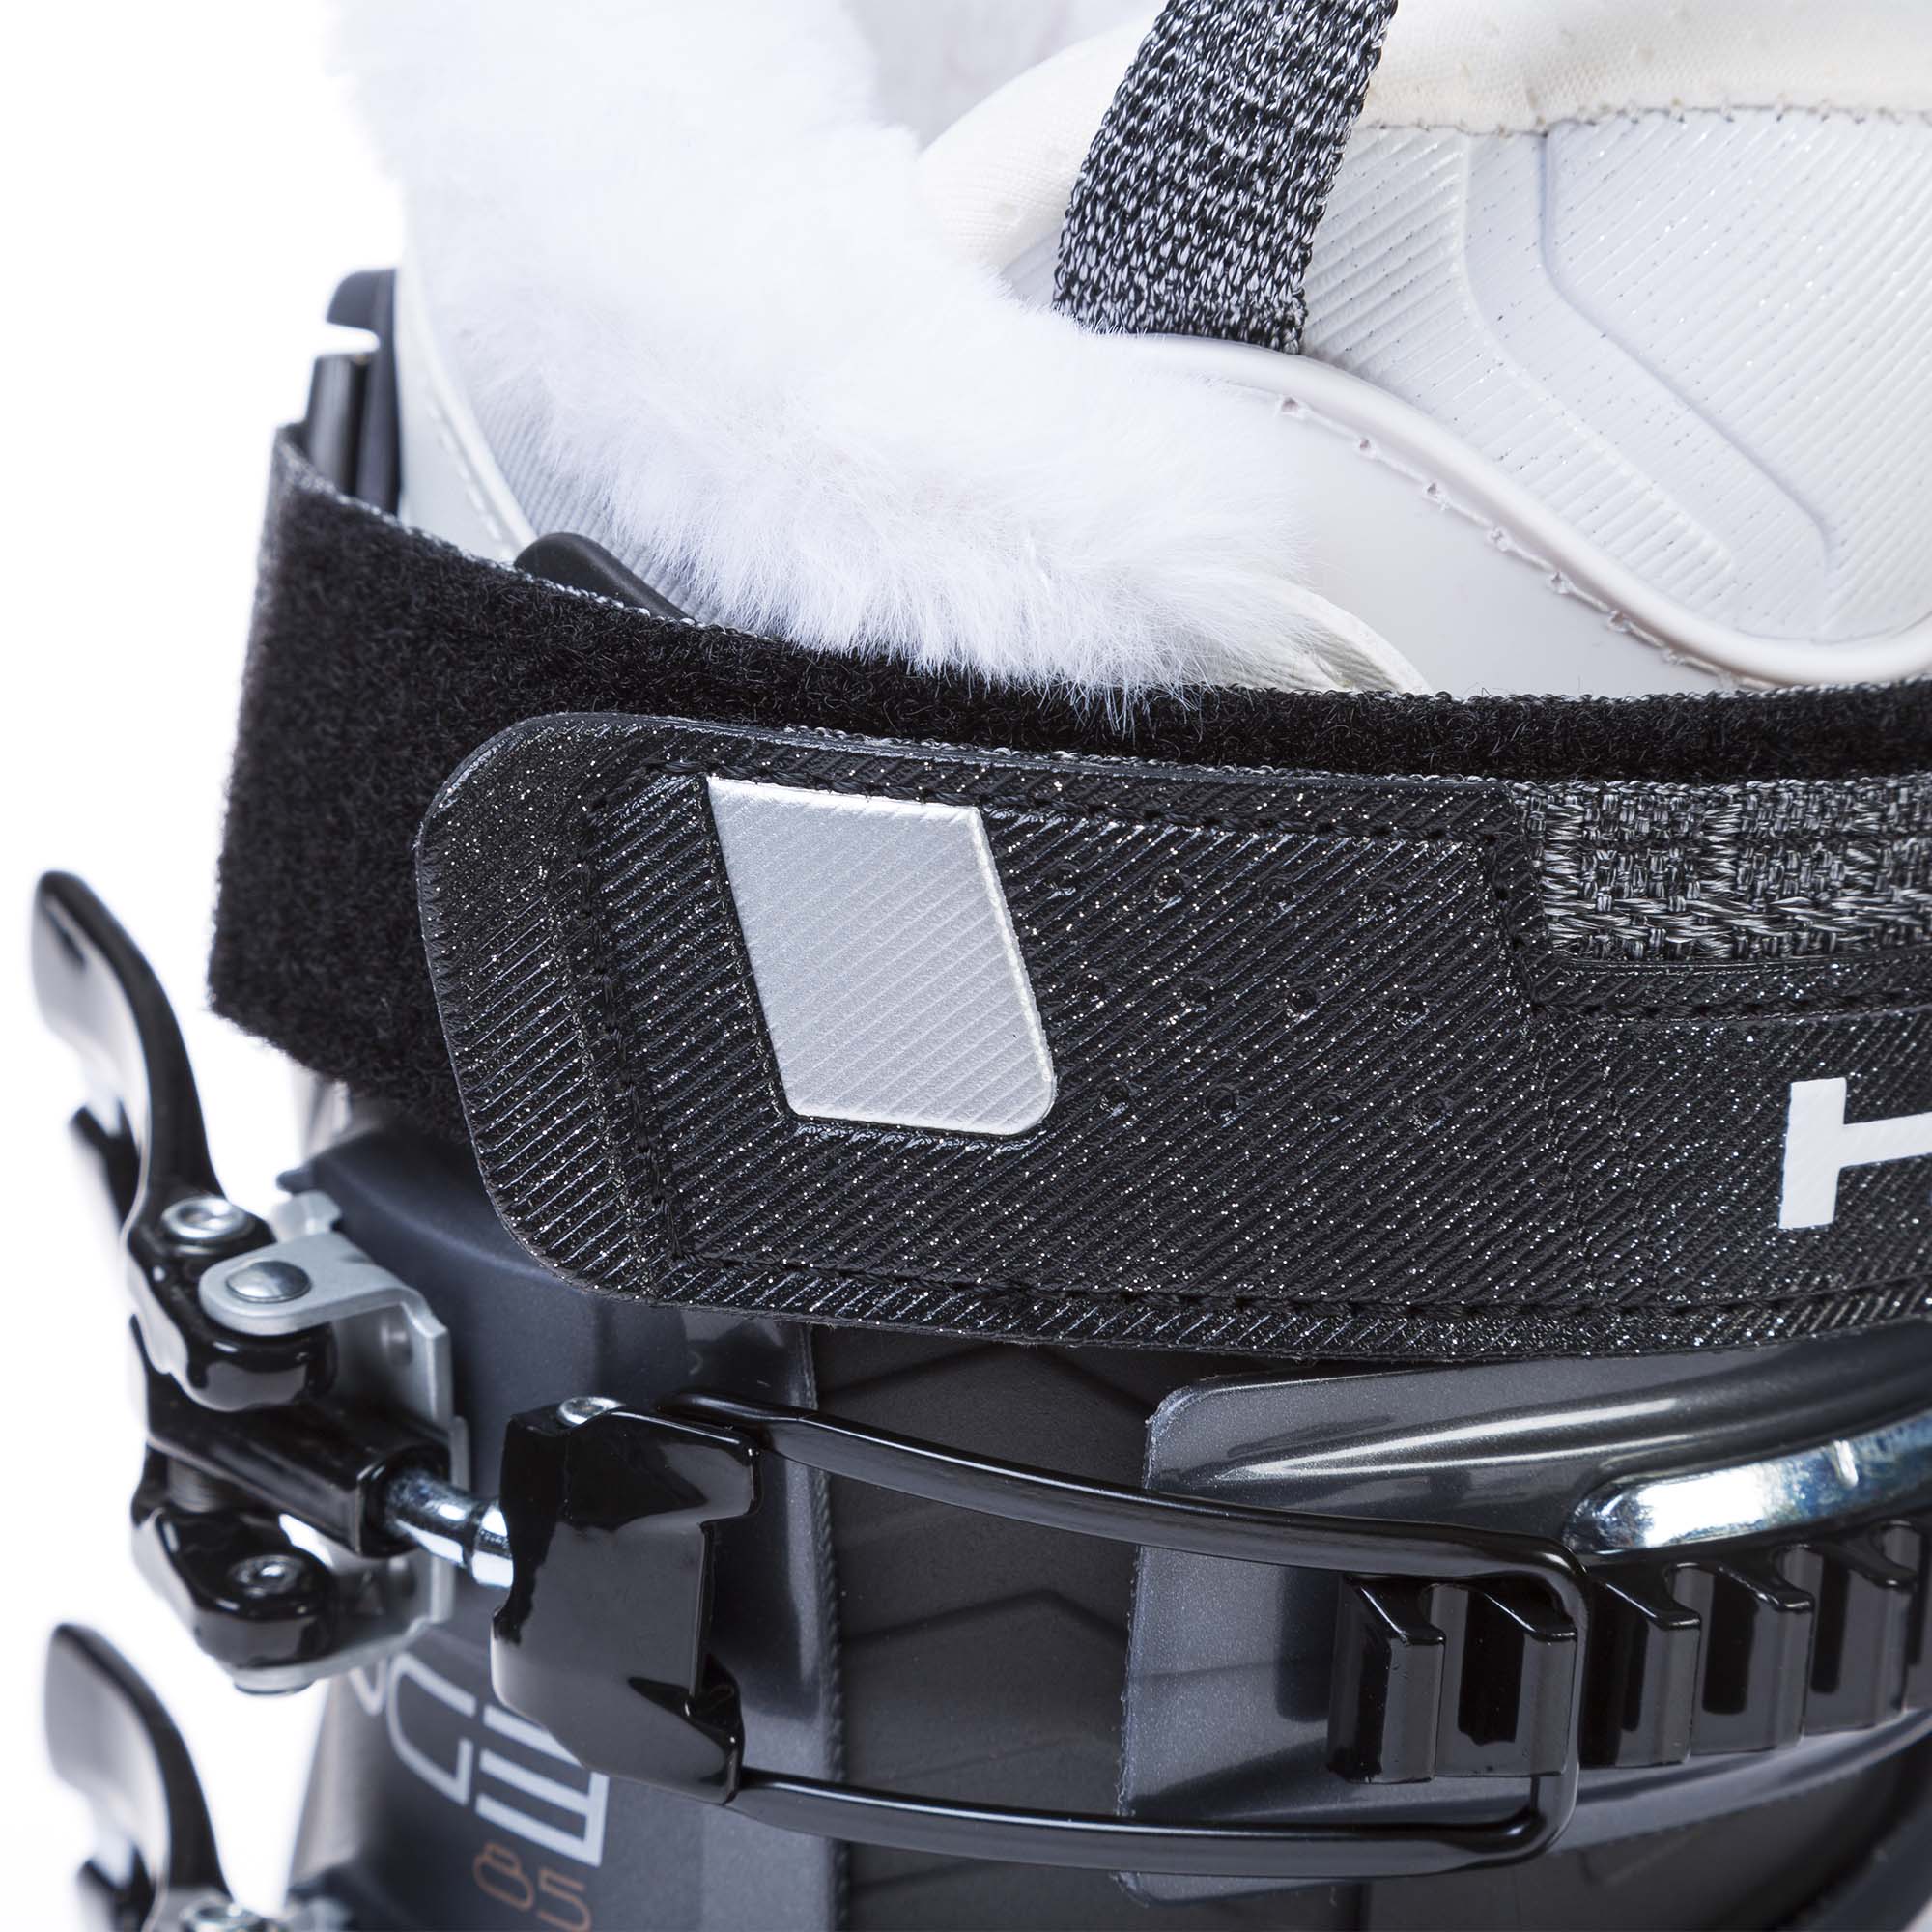 Head Edge 85 HV Women's Ski Boots